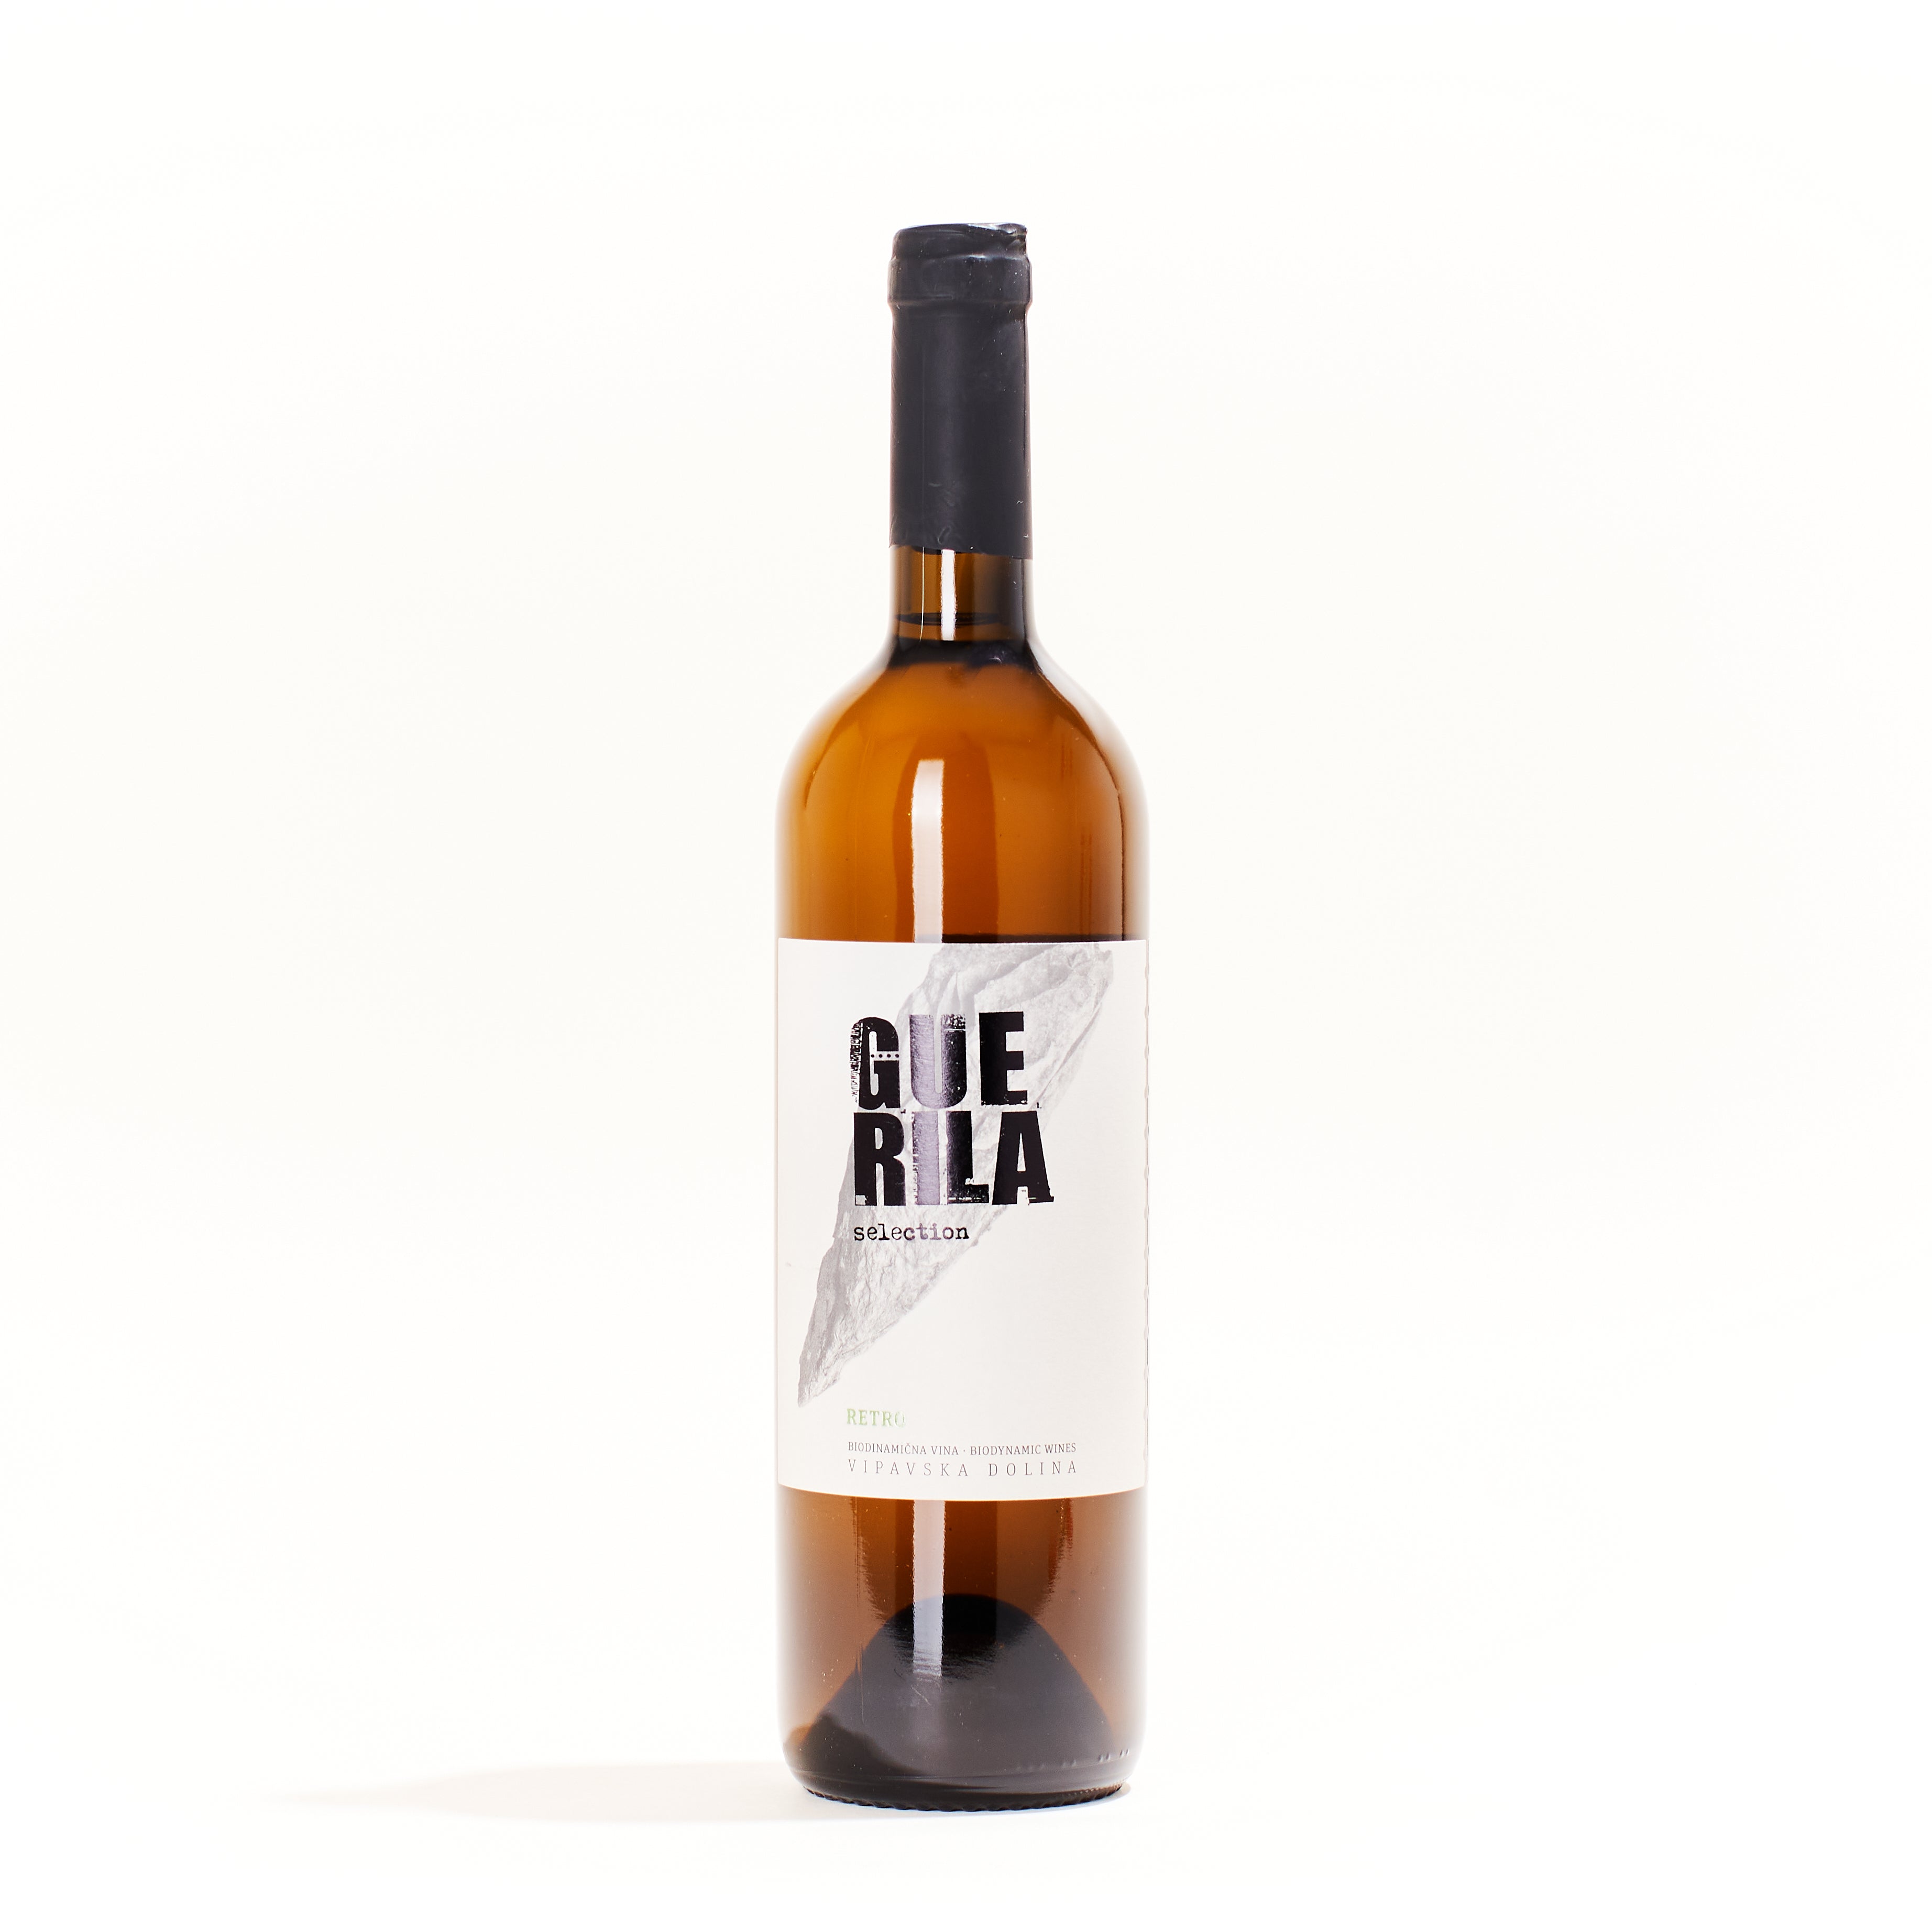 Guerilla Retro White Field Blend (Pinela  Zelen  Malvasia  Rebula)         natural orange wine Adelaide Hills South Australia